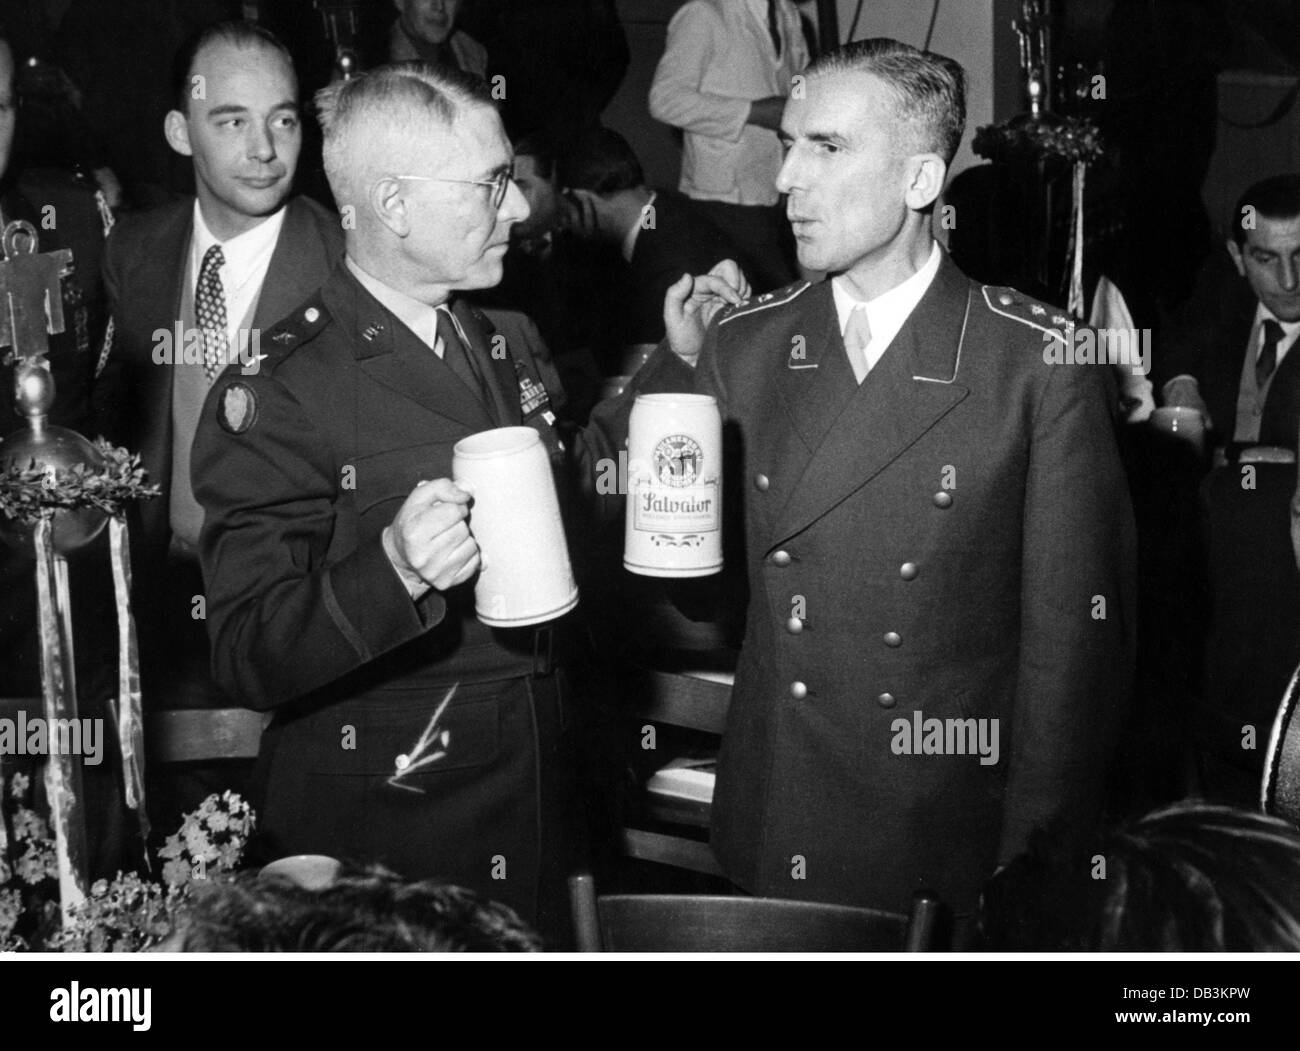 Militär, USA, Armee, Generalmajor Watson mit Oberstleutnant Kopp, Salvatorkeller, München, 1956, Zusatzrechte-Clearences-nicht verfügbar Stockfoto